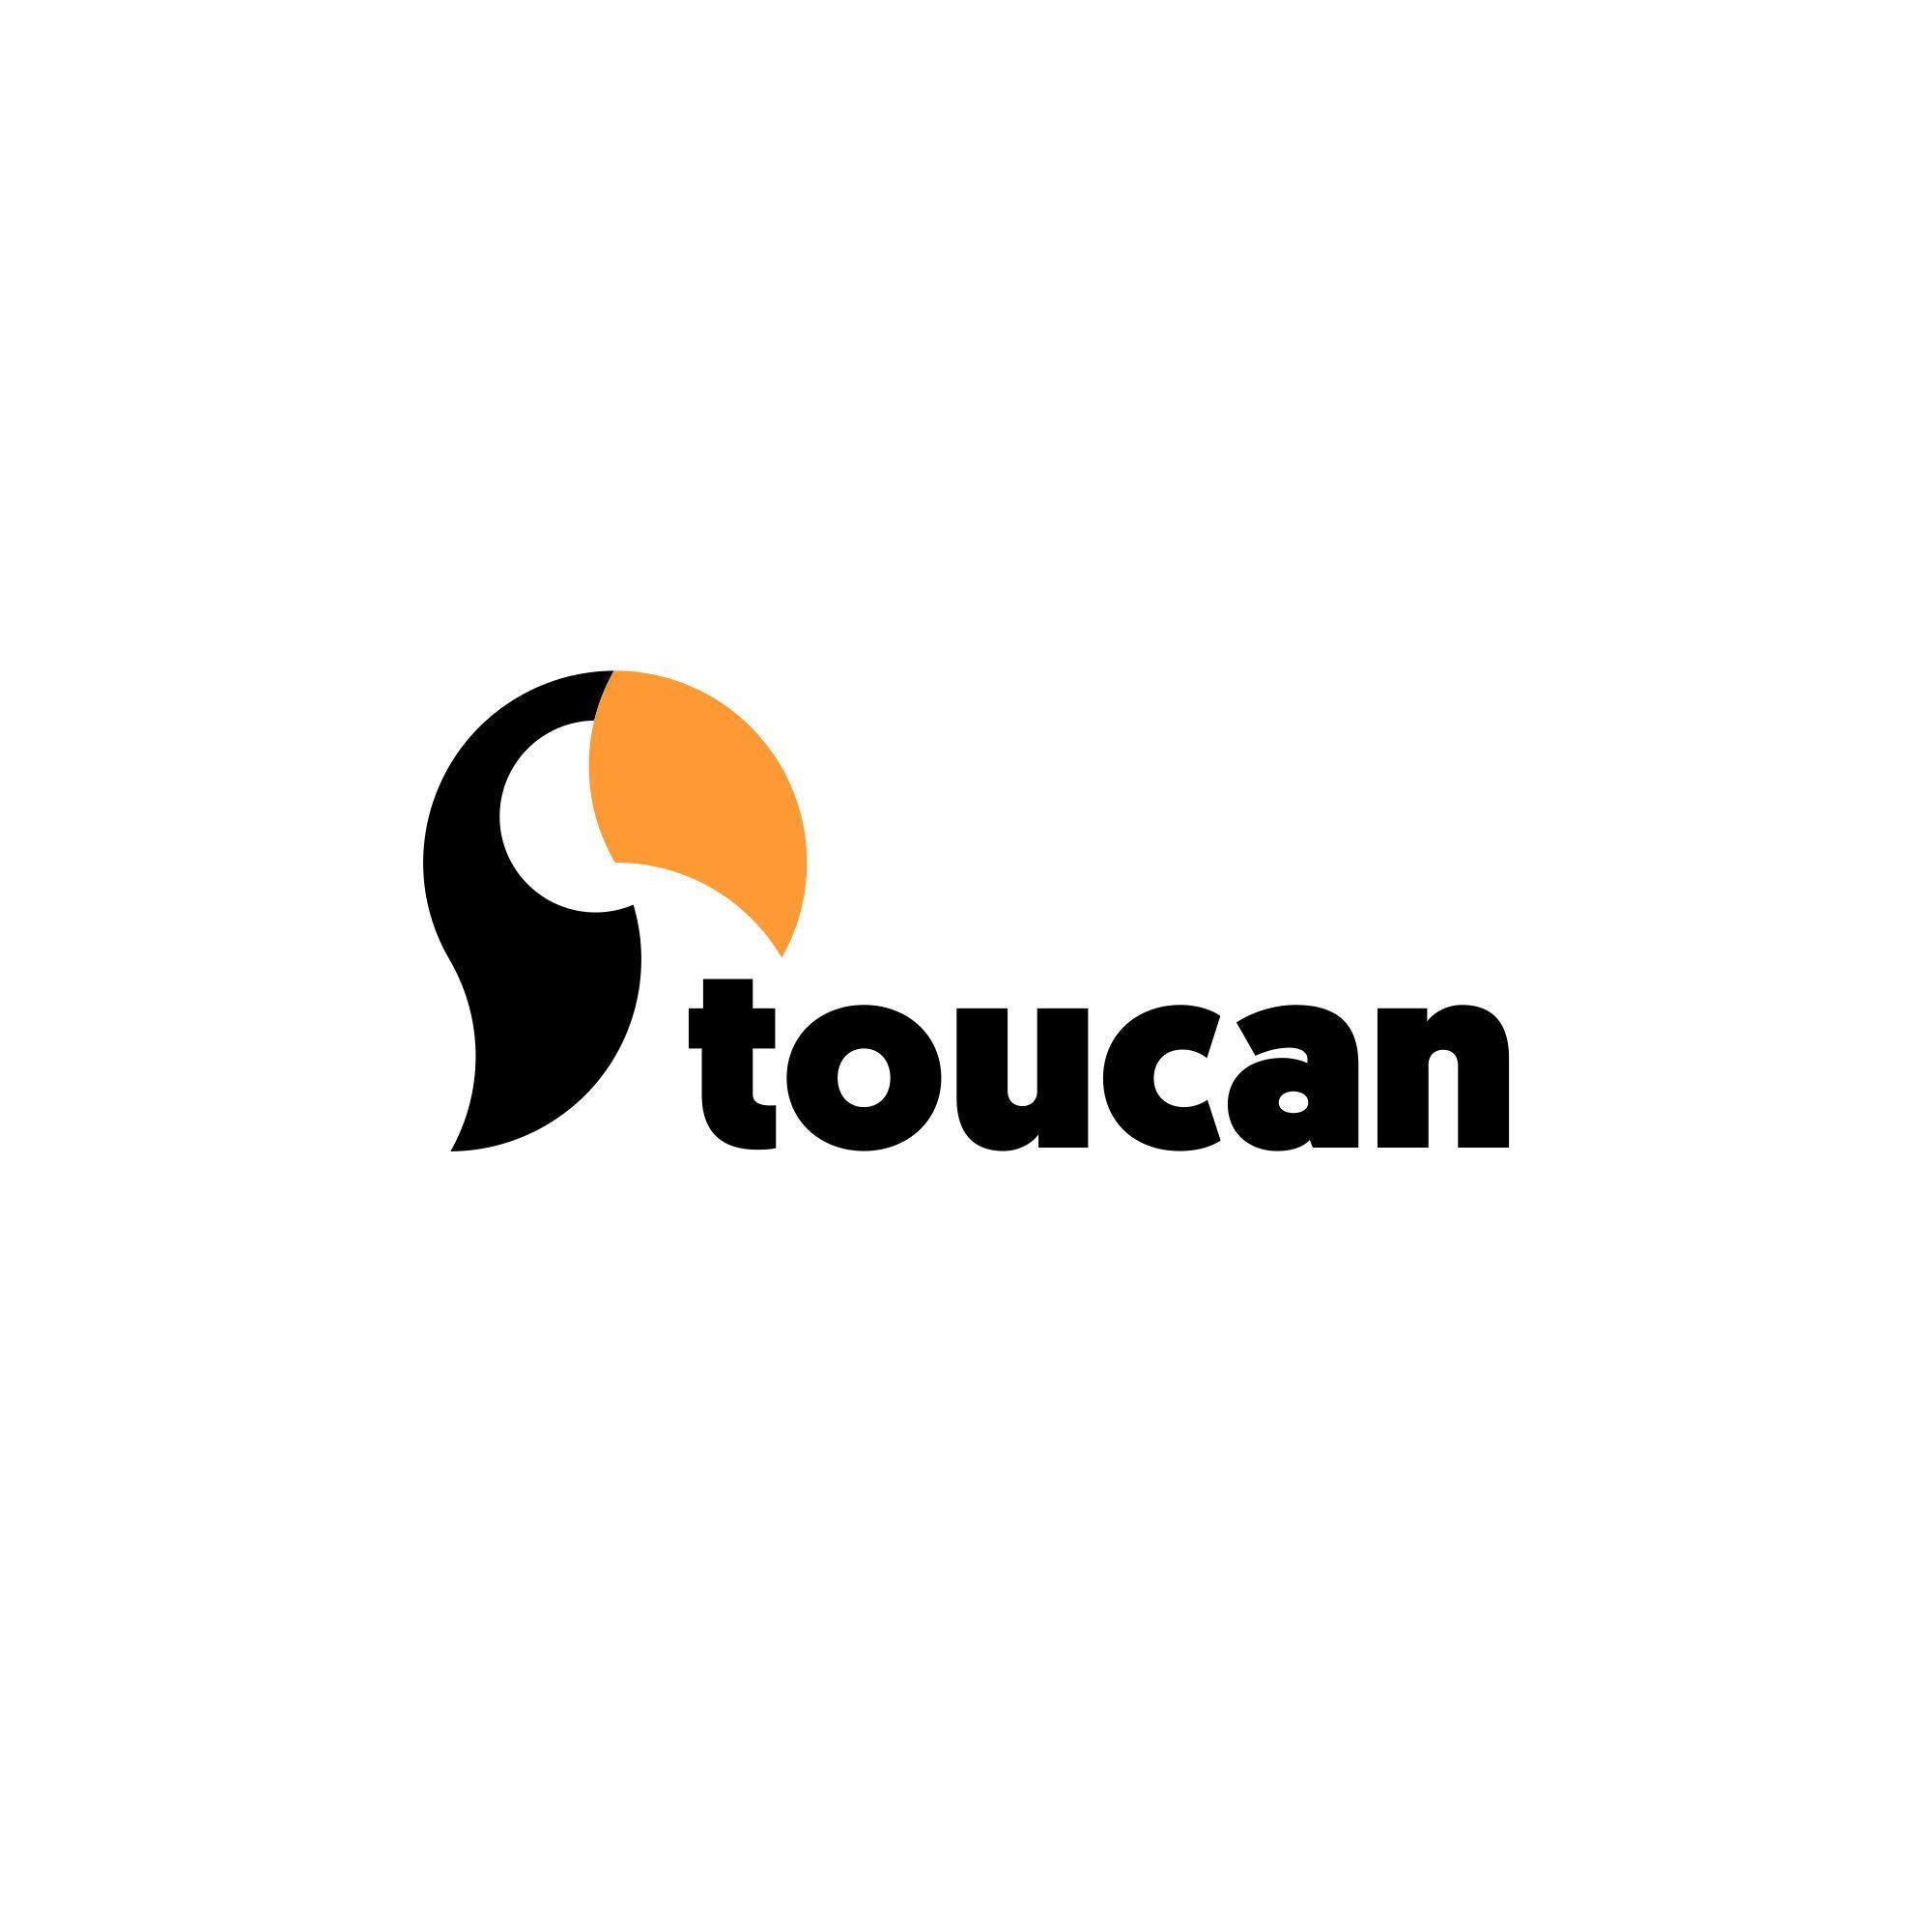 Toucan Logo - Toucan logo for an online printing service. Logo design